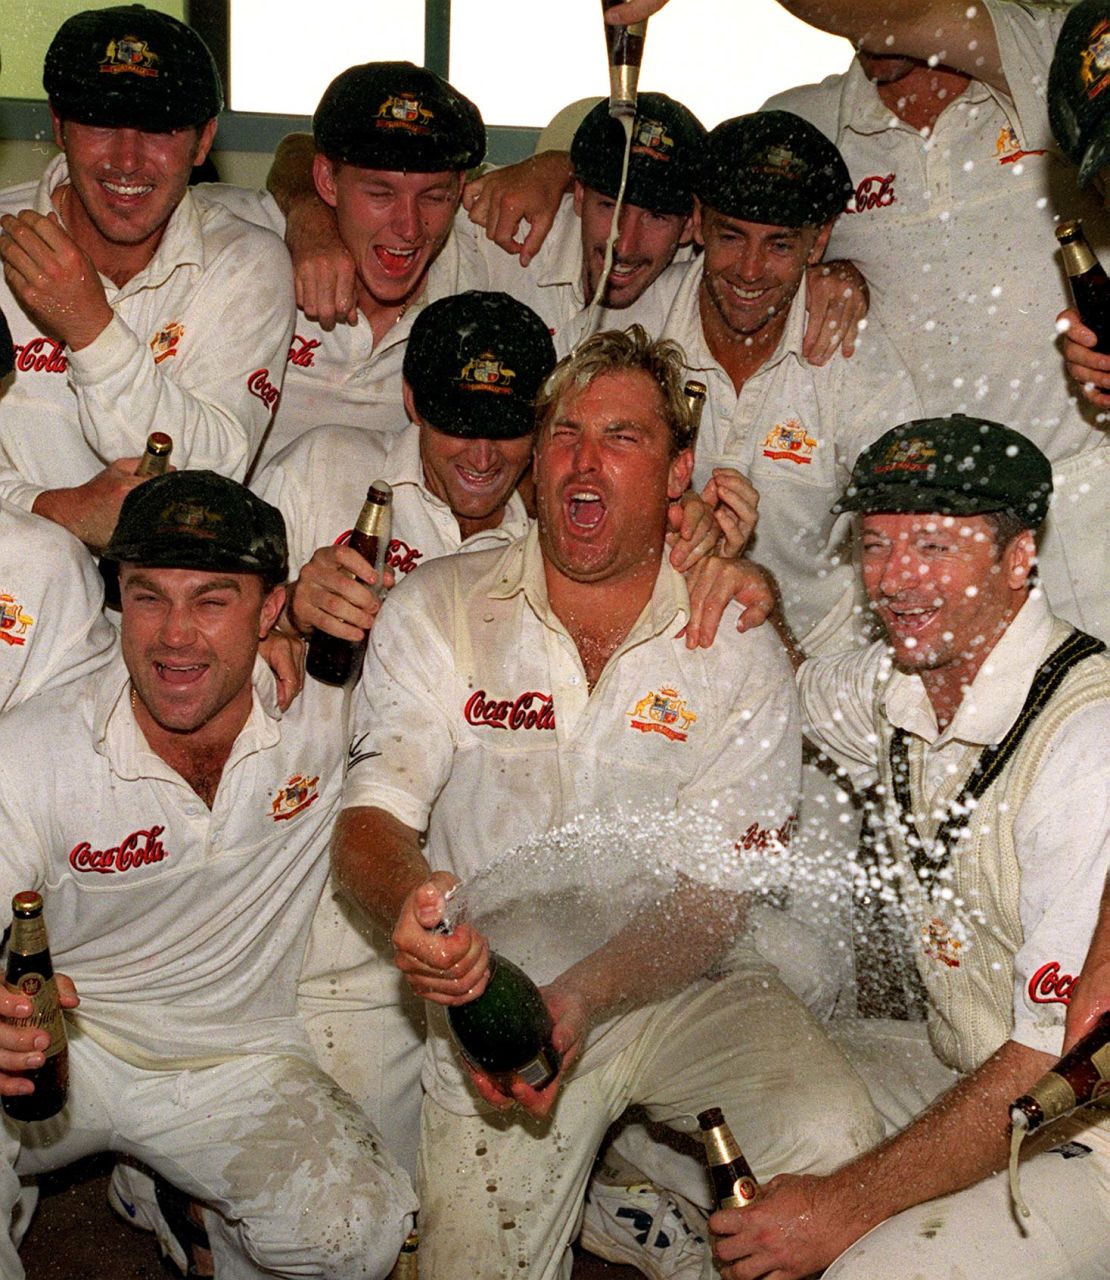 Australian cricketing legend Shane Warne, center, celebrates a win in New Zealand in 2000.